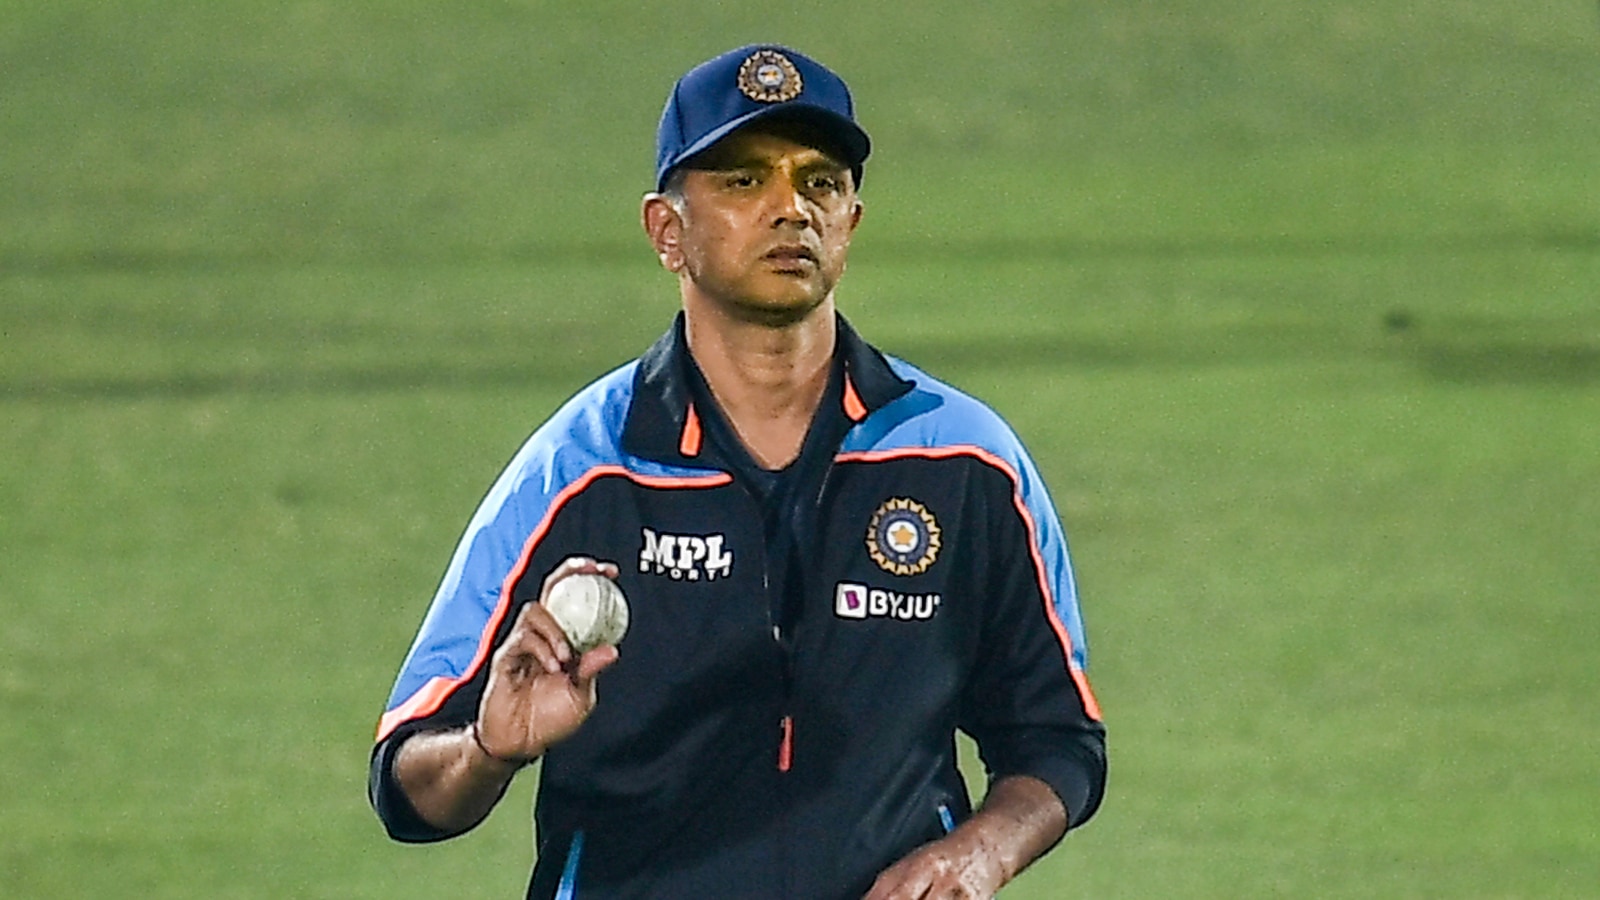 SA series an eye-opener says Rahul Dravid after 0-3 ODI loss - Hindustan  Times